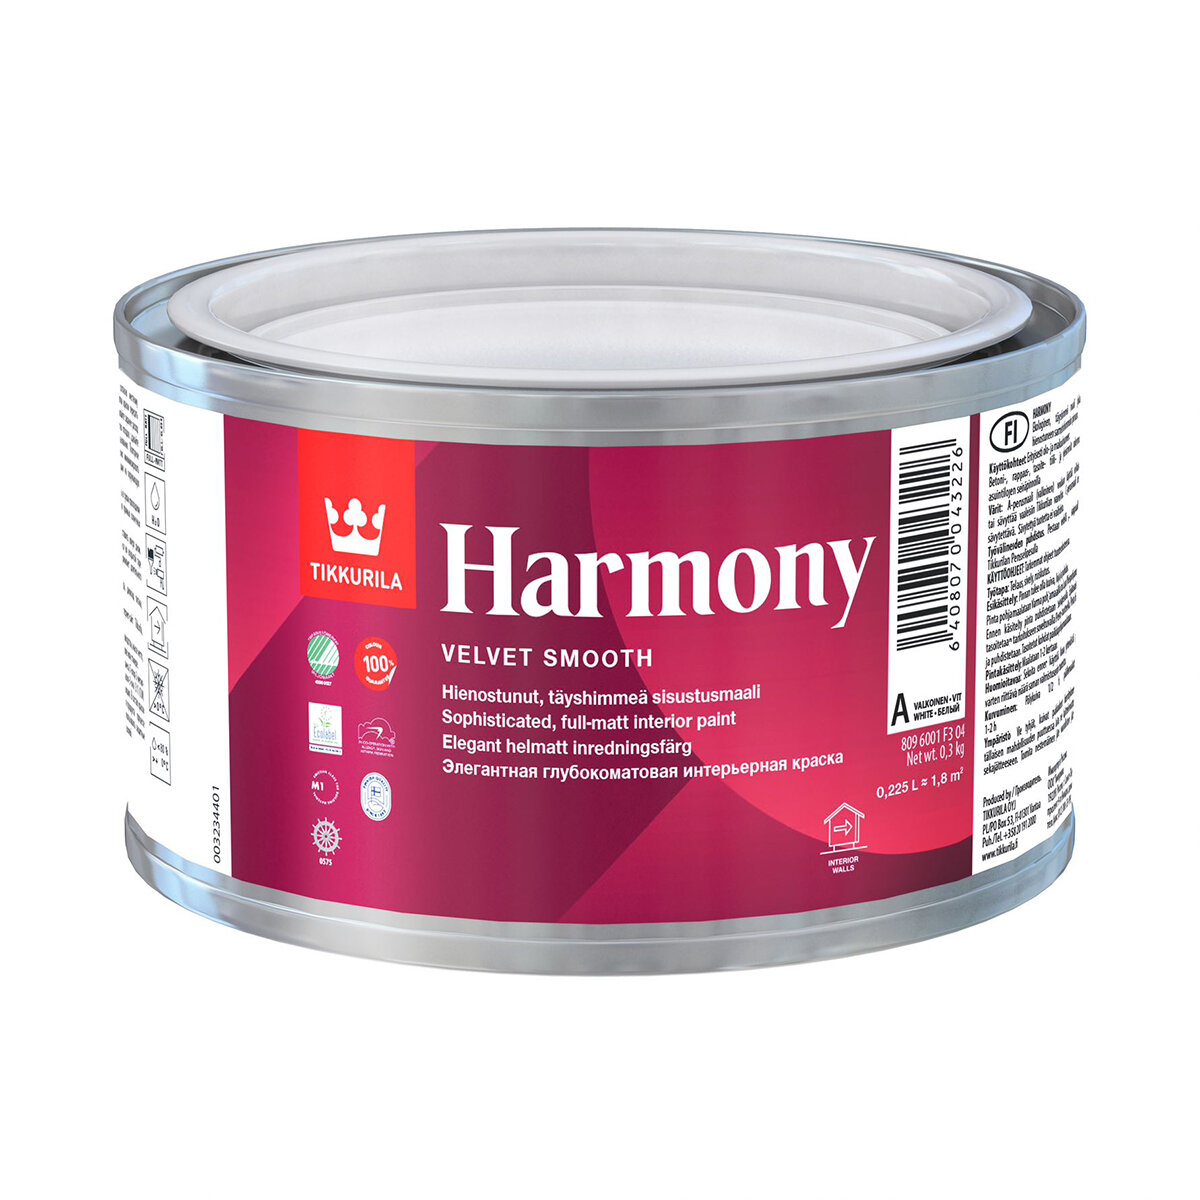    Harmony () TIKKURILA 0,225   ( )